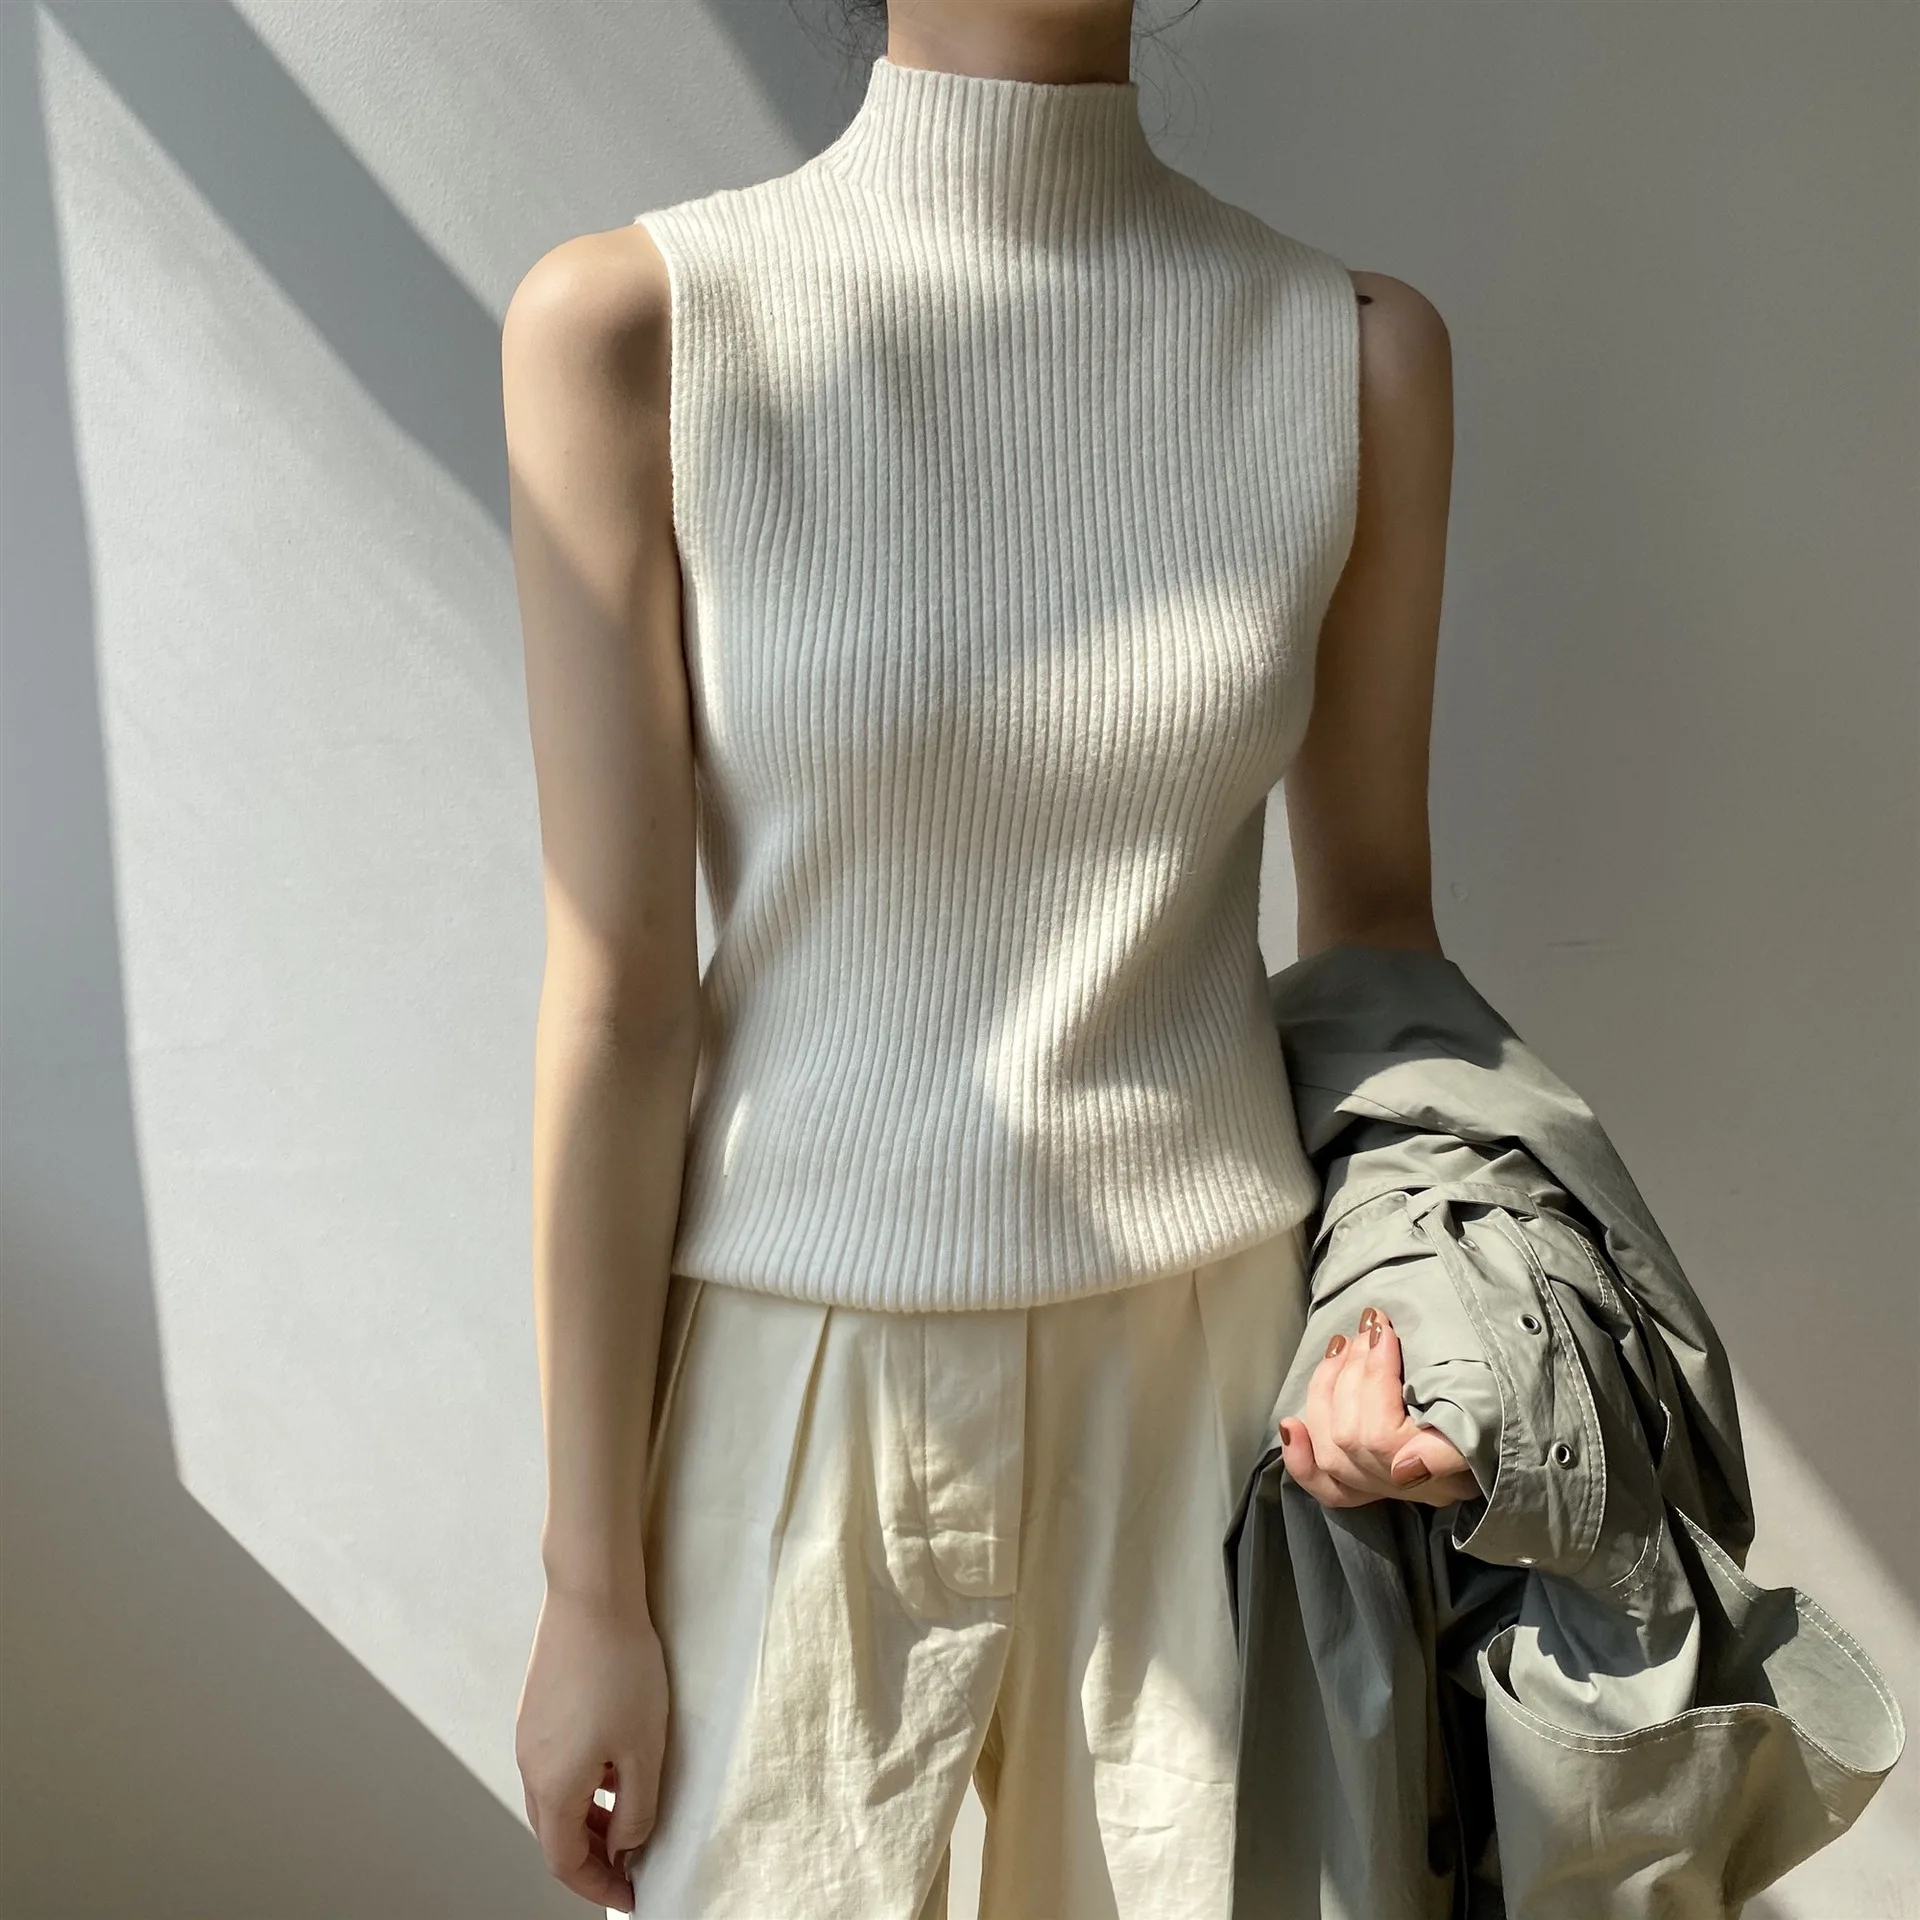 Kore Kolsuz Triko 2021 Streetwear Moda Sonbahar Yeni Kadın Düz Renk Örme Yelek Yüksek Boyun Casual Tops Kazak Beyaz Görüntü 1